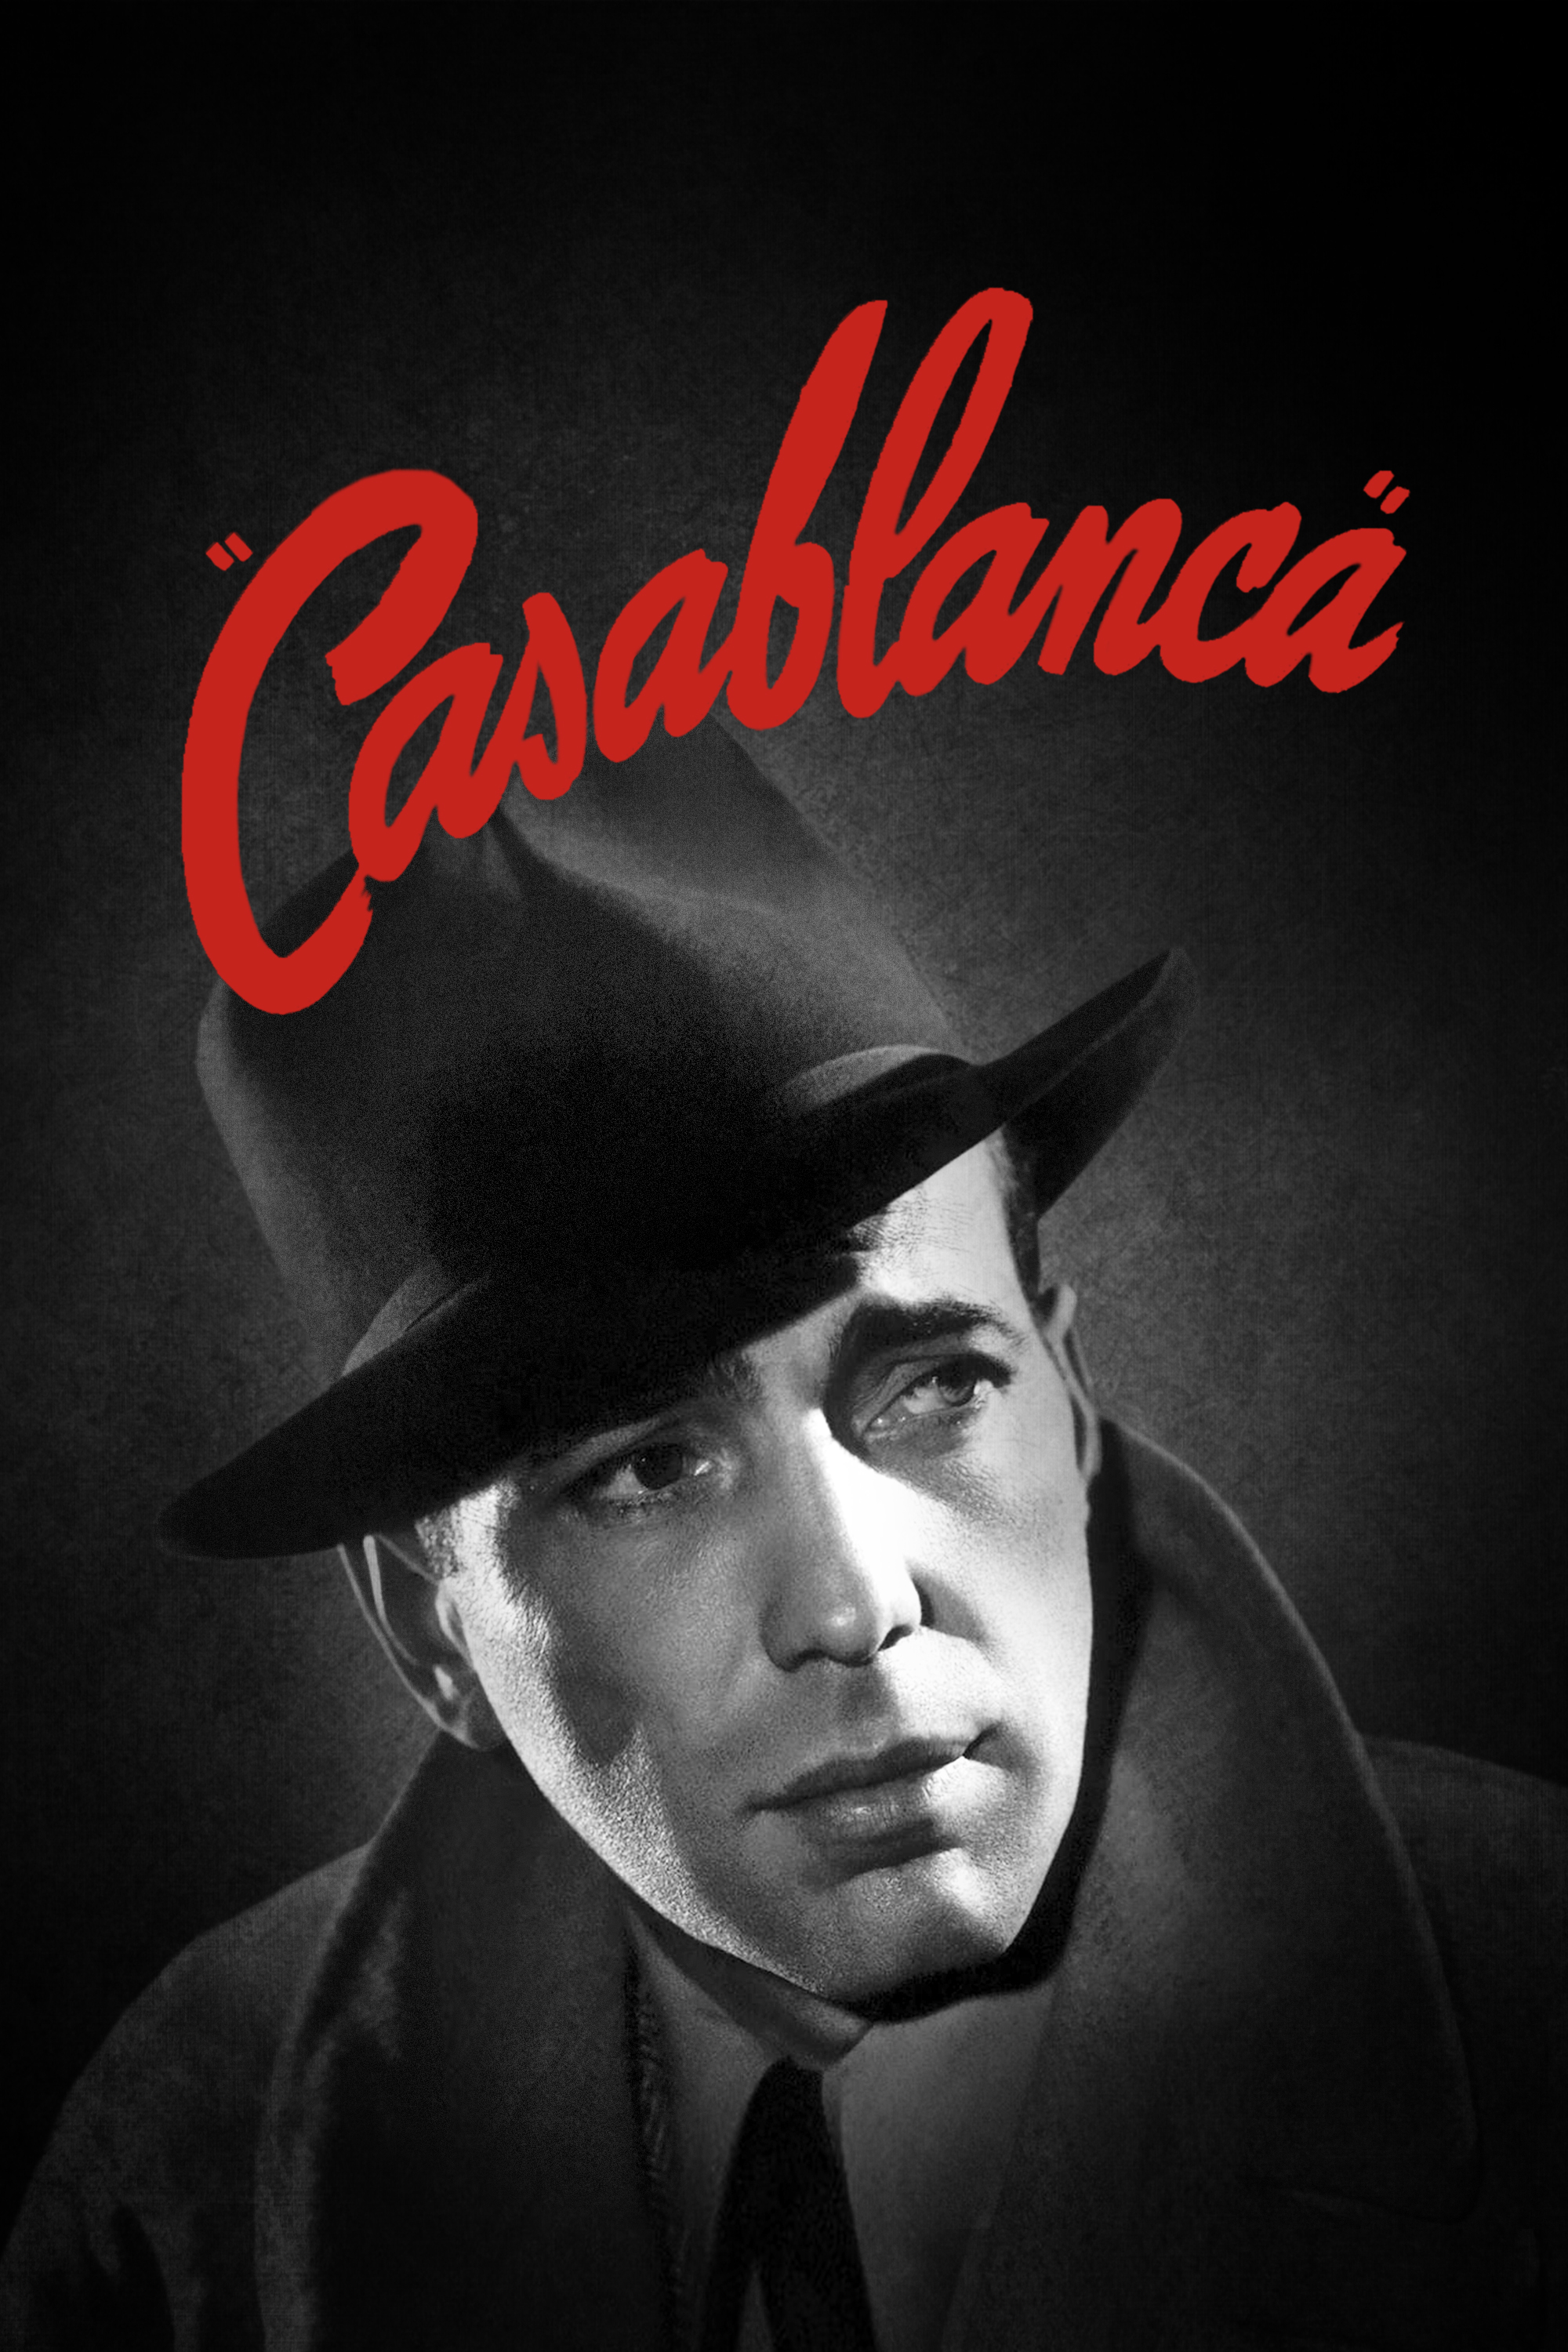 Casablanca Picture